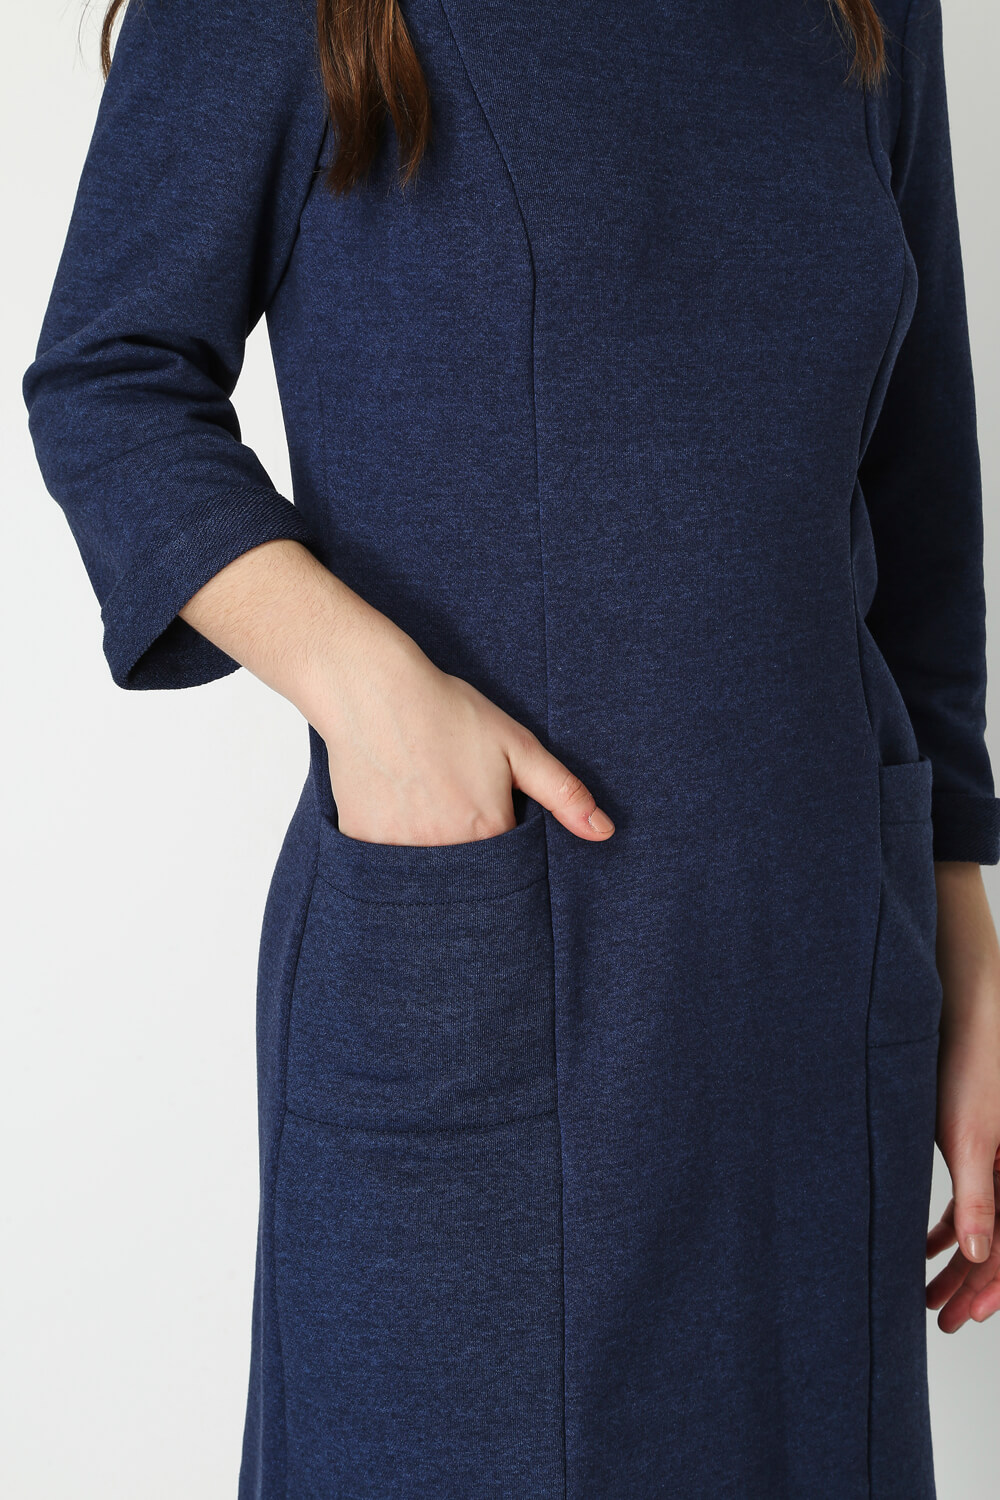 Blue Pocket Detail Shift Dress, Image 4 of 5